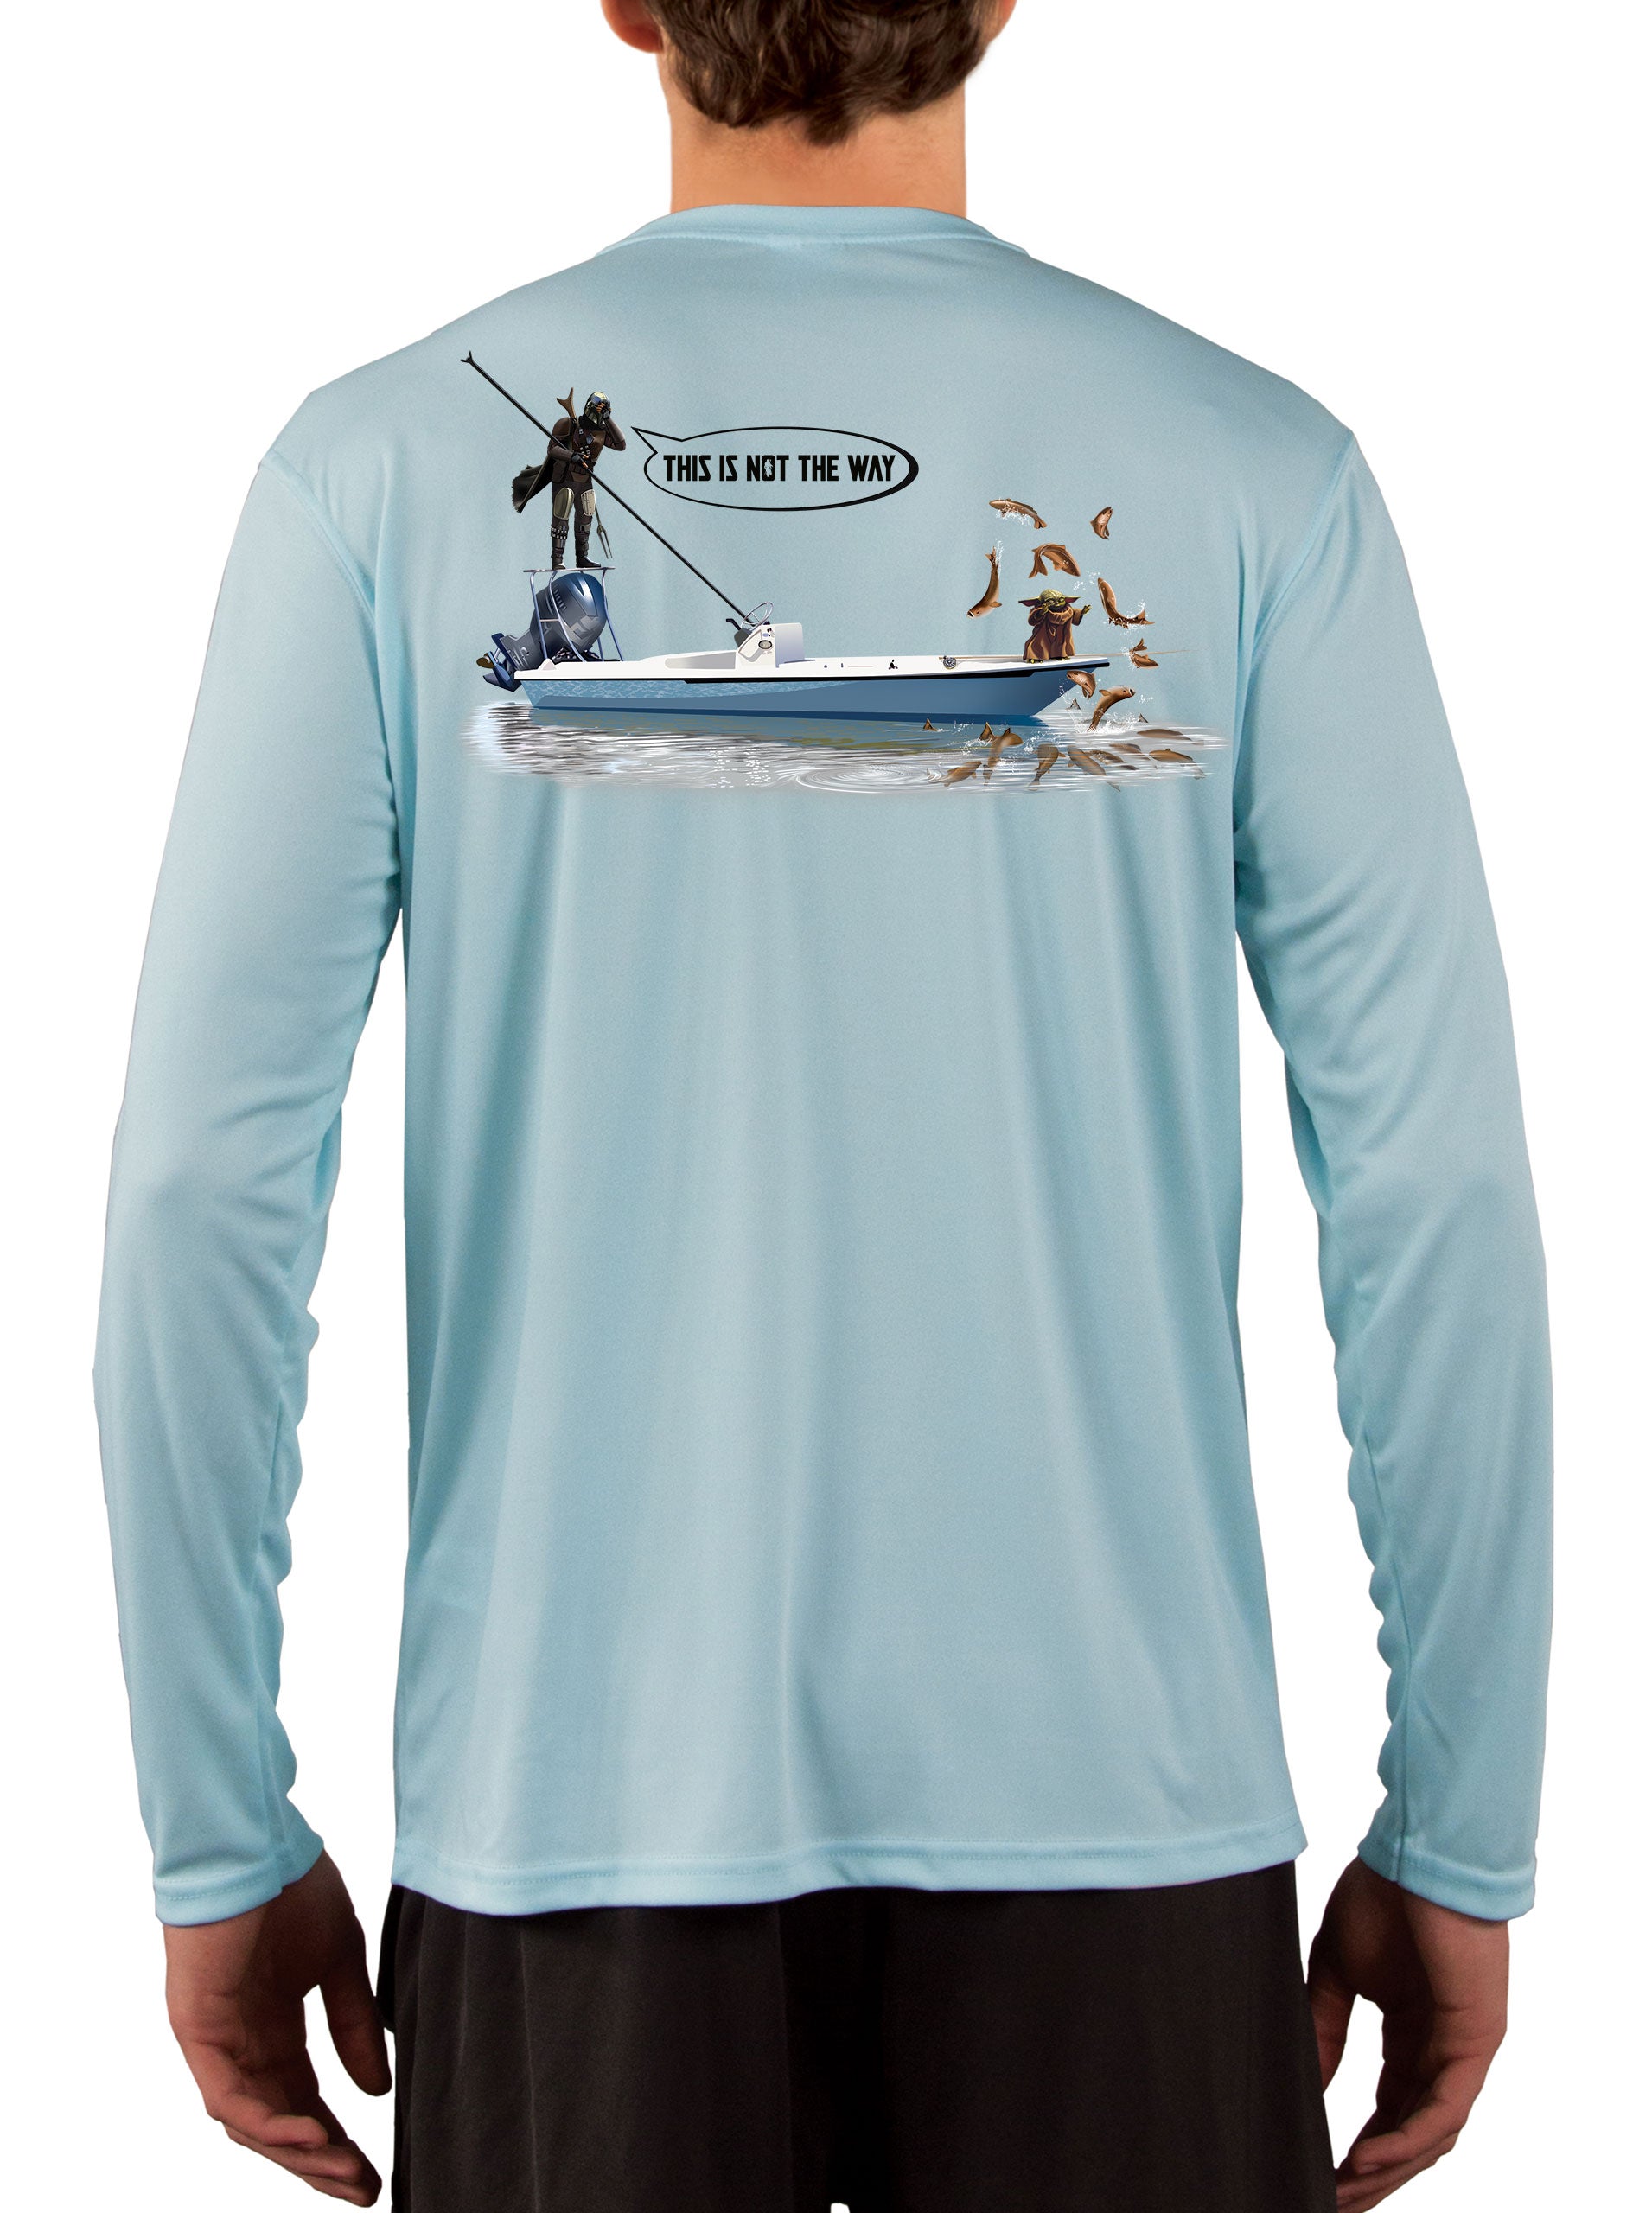 Mandalorian Grogu Baby Yoda Fishing Shirts for Men Star Wars Poling Skiff 4XL / Ice Blue